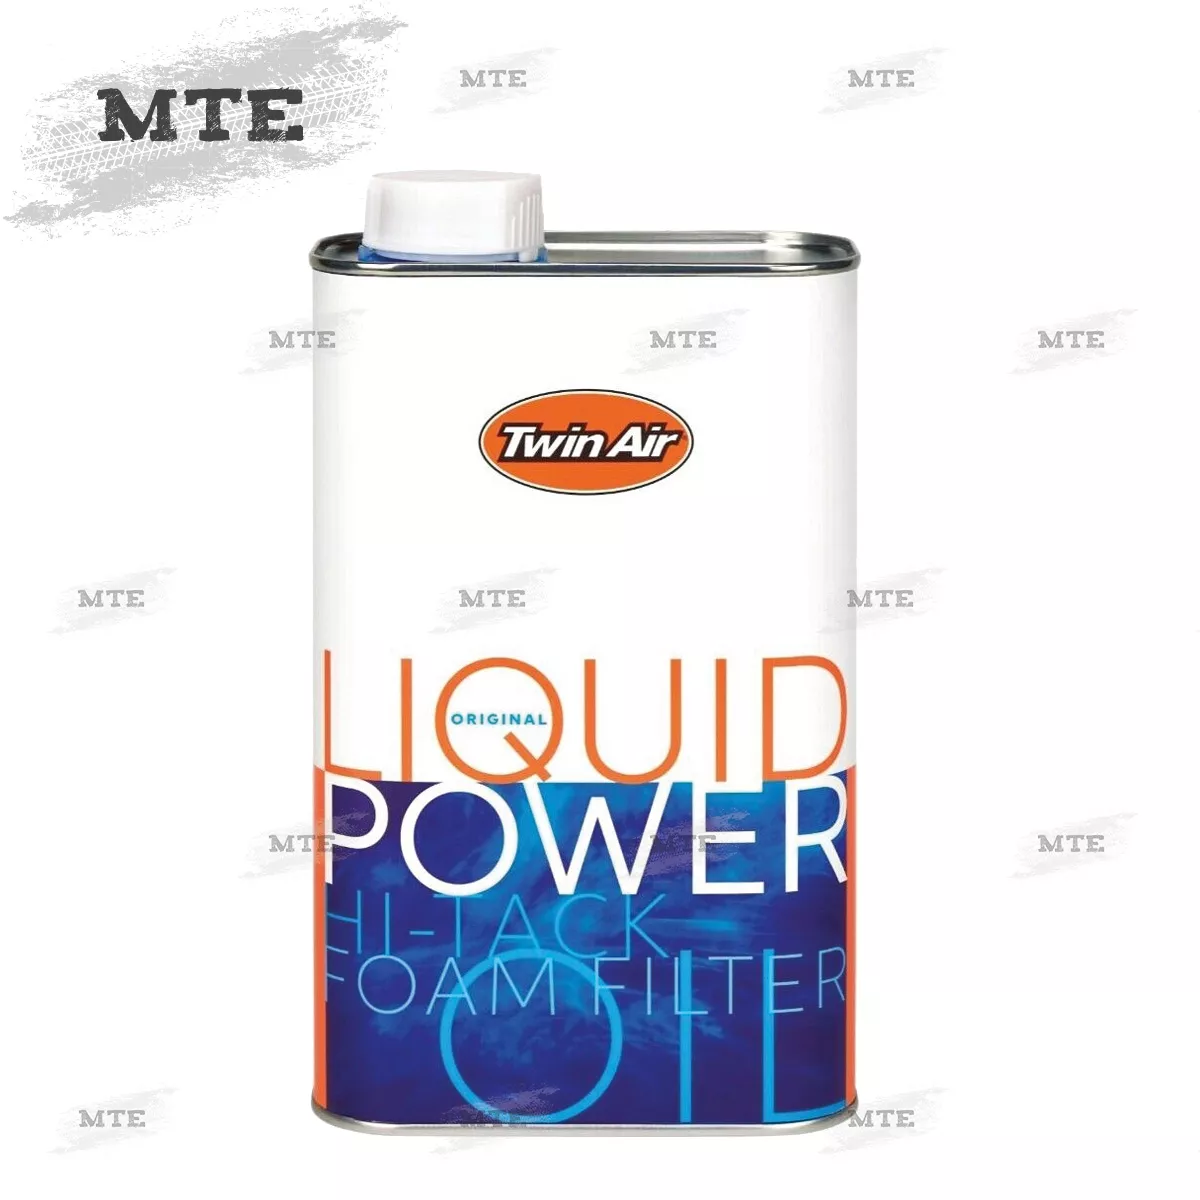 Motorex Luftfilteröl Spray für Schaumstoff Filter